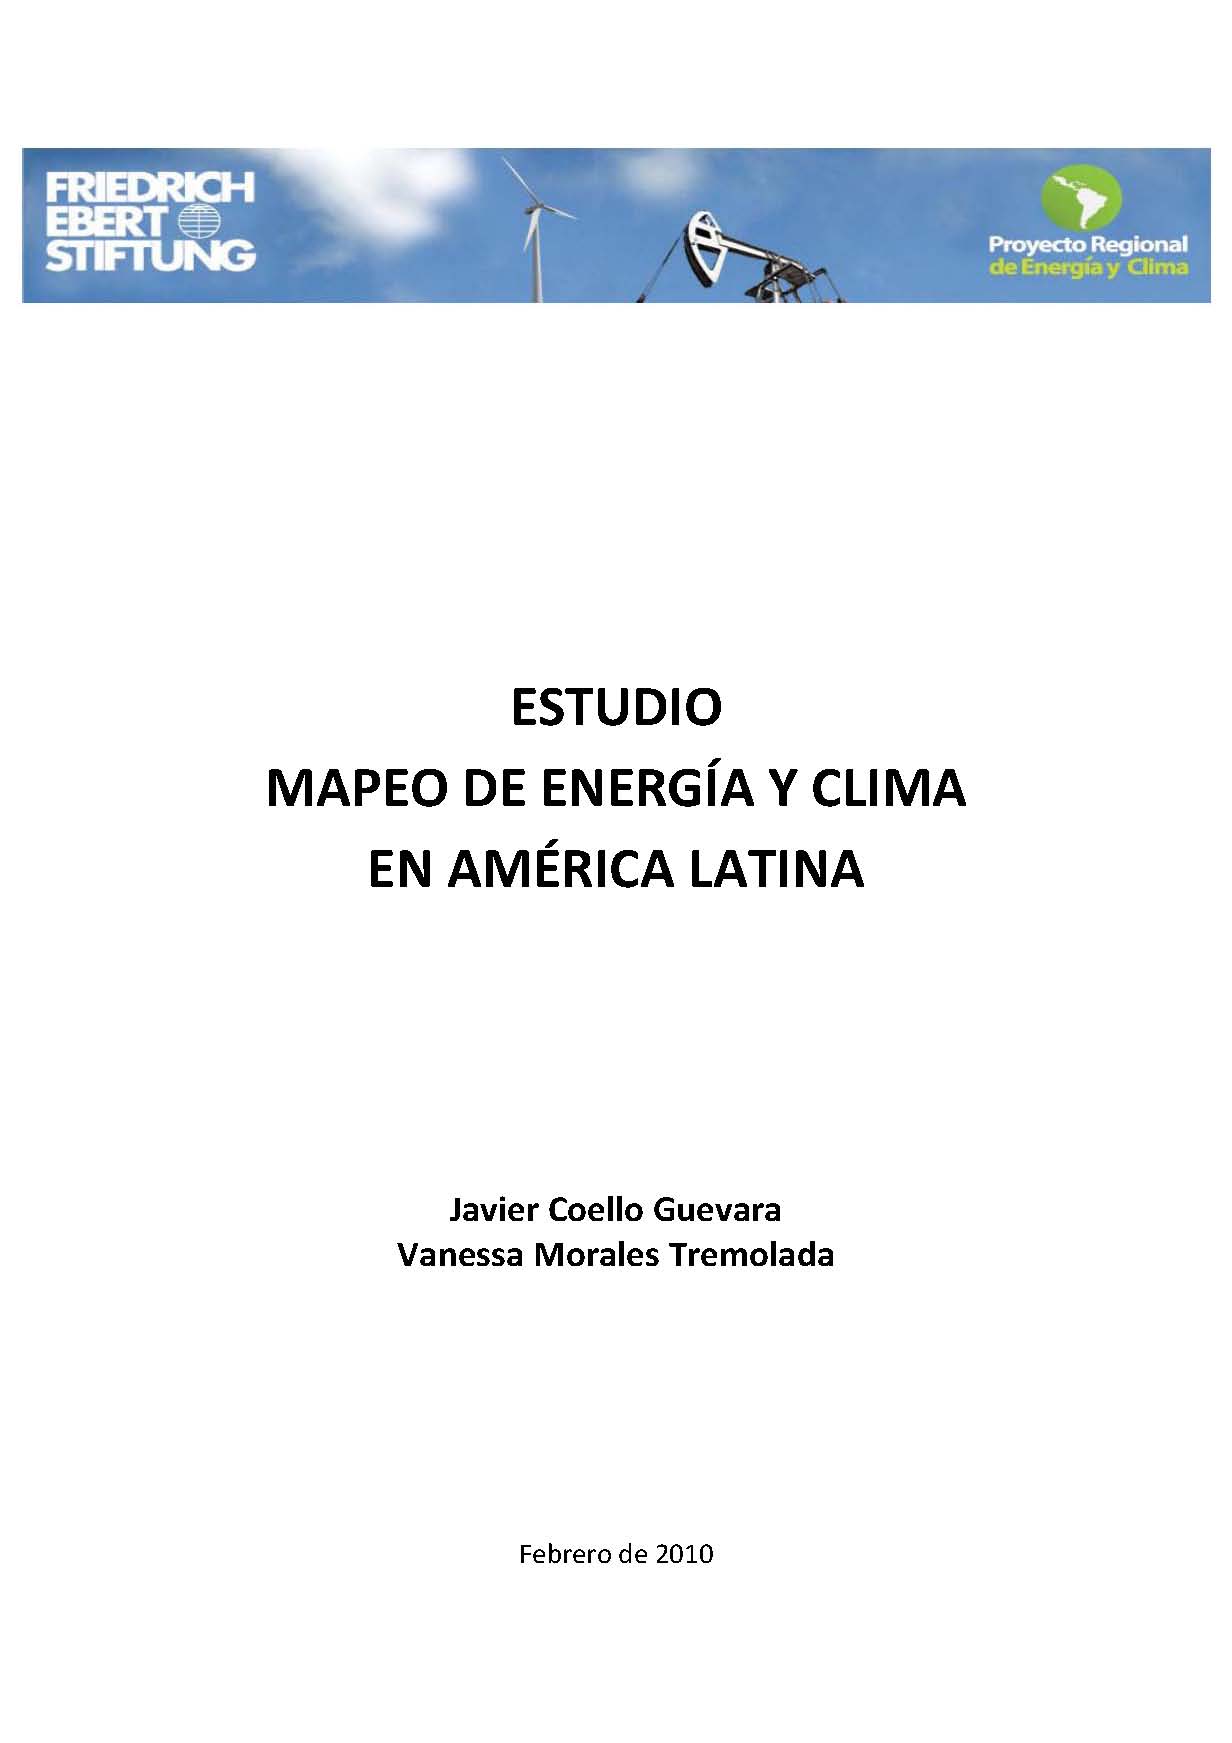 Coello Guevara, Javier y Morales Tremolada, Vanessa <br>Estudio mapeo de energía y clima en América Latina<br/>(s.l): FES ; Proyecto Regional de Energía y Clima. feb. 2010. 107 p. 